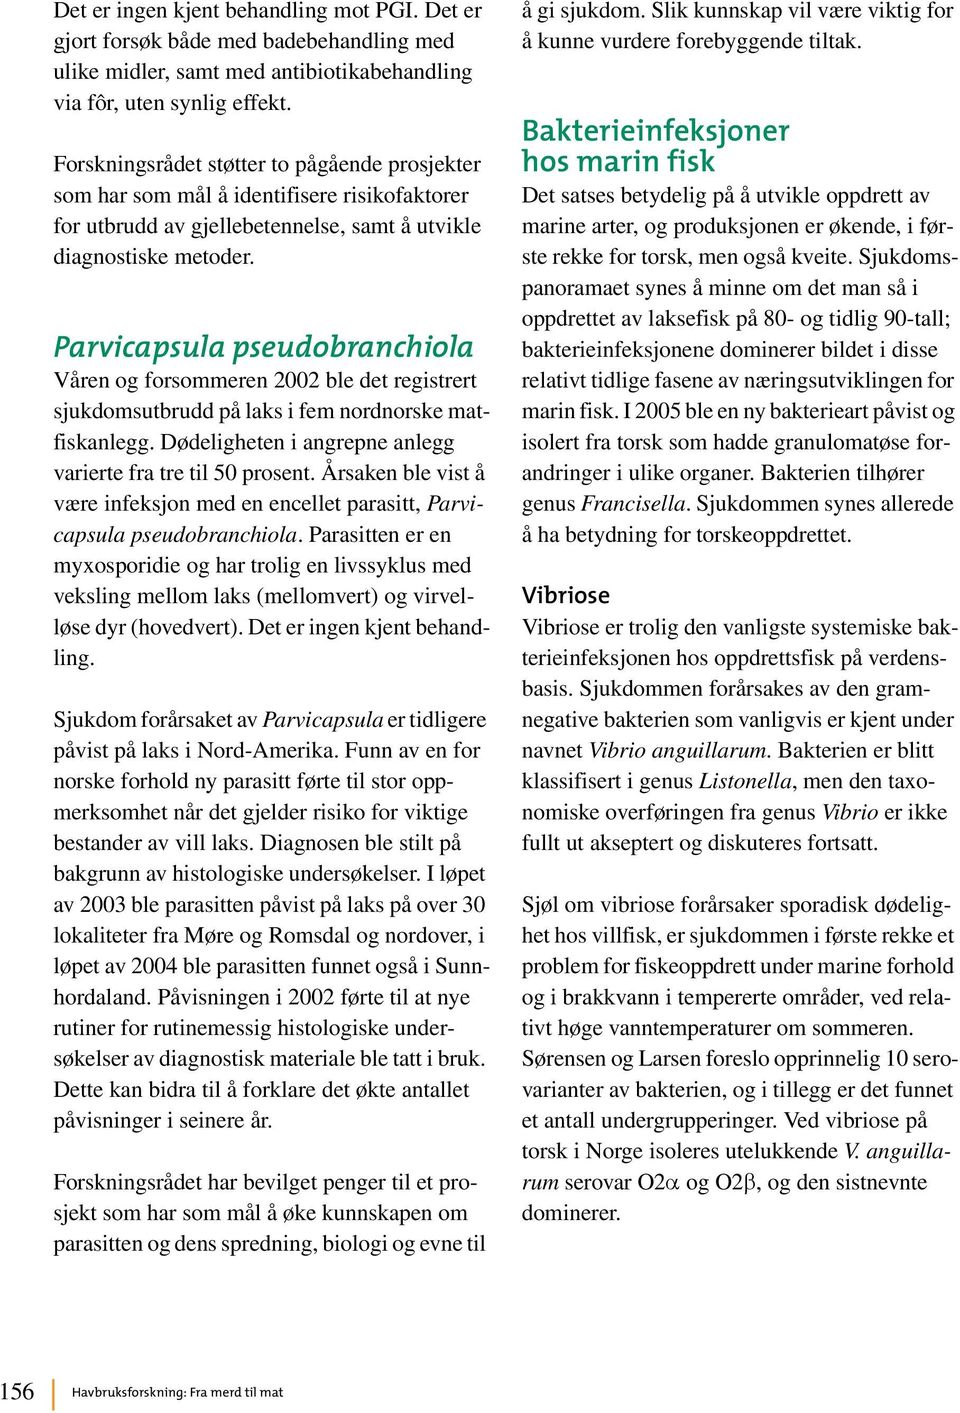 Parvicapsula pseudobranchiola Våren og forsommeren 2002 ble det registrert sjukdomsutbrudd på laks i fem nordnorske matfiskanlegg. Dødeligheten i angrepne anlegg varierte fra tre til 50 prosent.